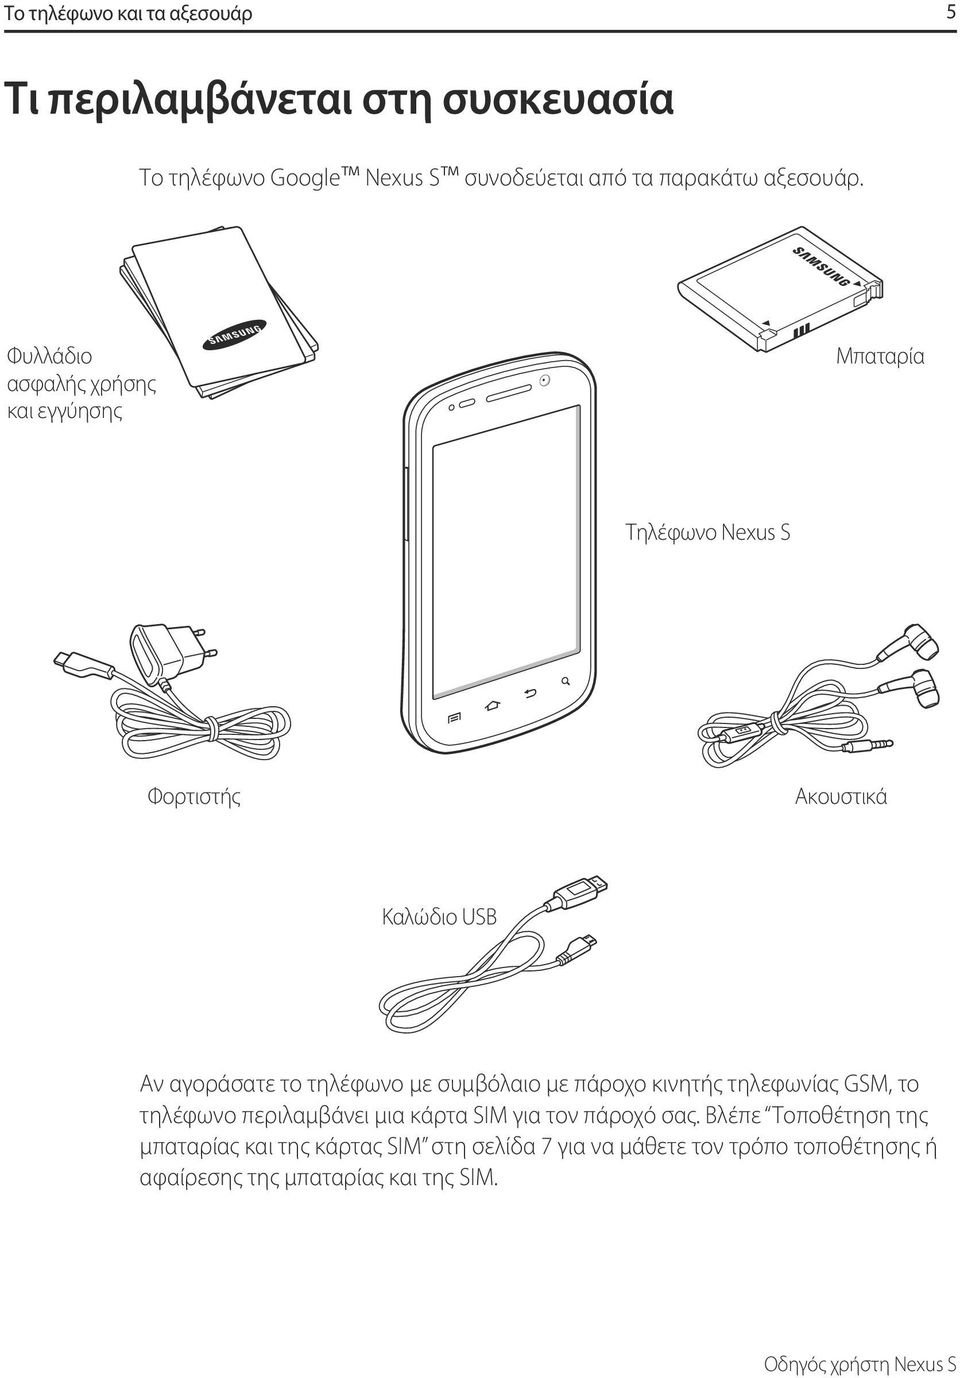 Φυλλάδιο ασφαλής χρήσης και εγγύησης Μπαταρία Τηλέφωνο Nexus S Φορτιστής Ακουστικά Καλώδιο USB Αν αγοράσατε το τηλέφωνο με